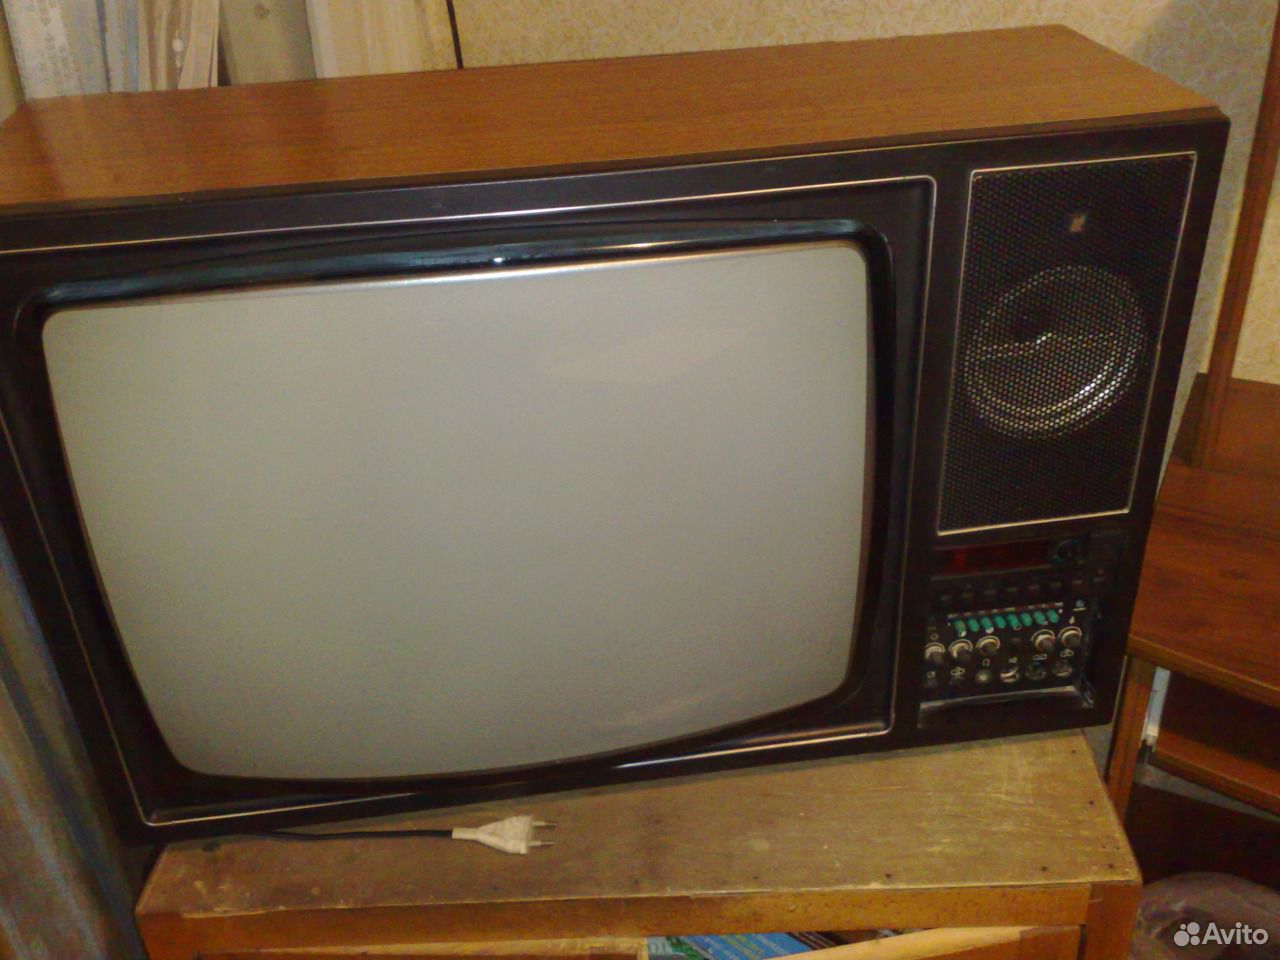 Авито куплю телевизор ростов на дону. Телевизор рекорд 310. Телевизор Садко цветной ламповый. Телевизор ламповый веко nr33tl. Телевизор ламповый 32 JVC.